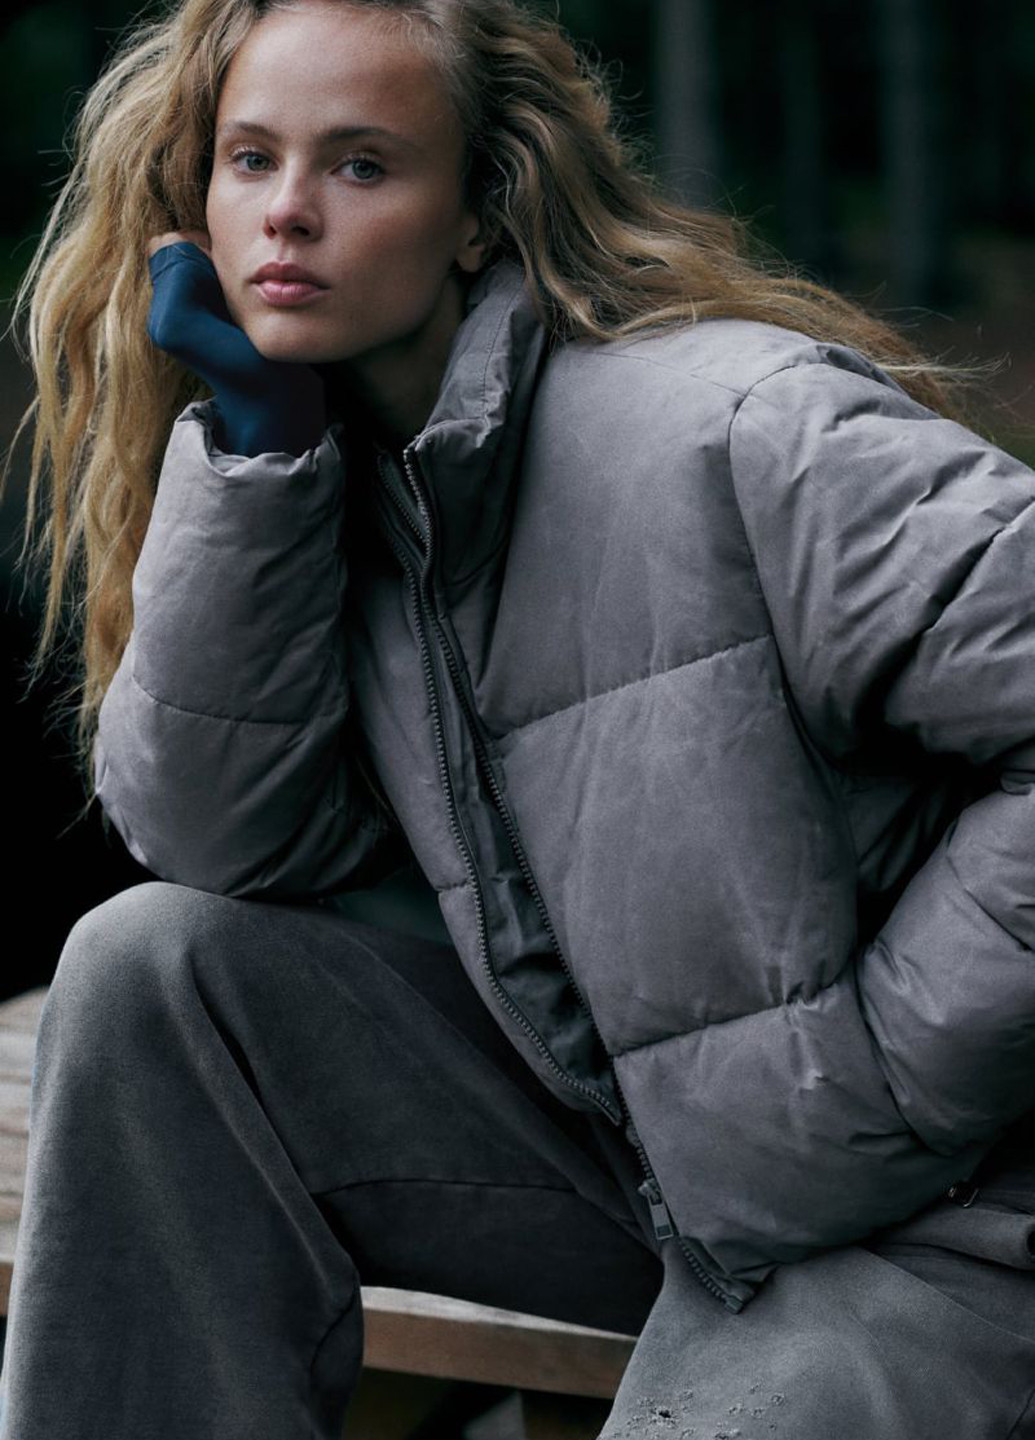 Сіра демісезонна куртка Zara